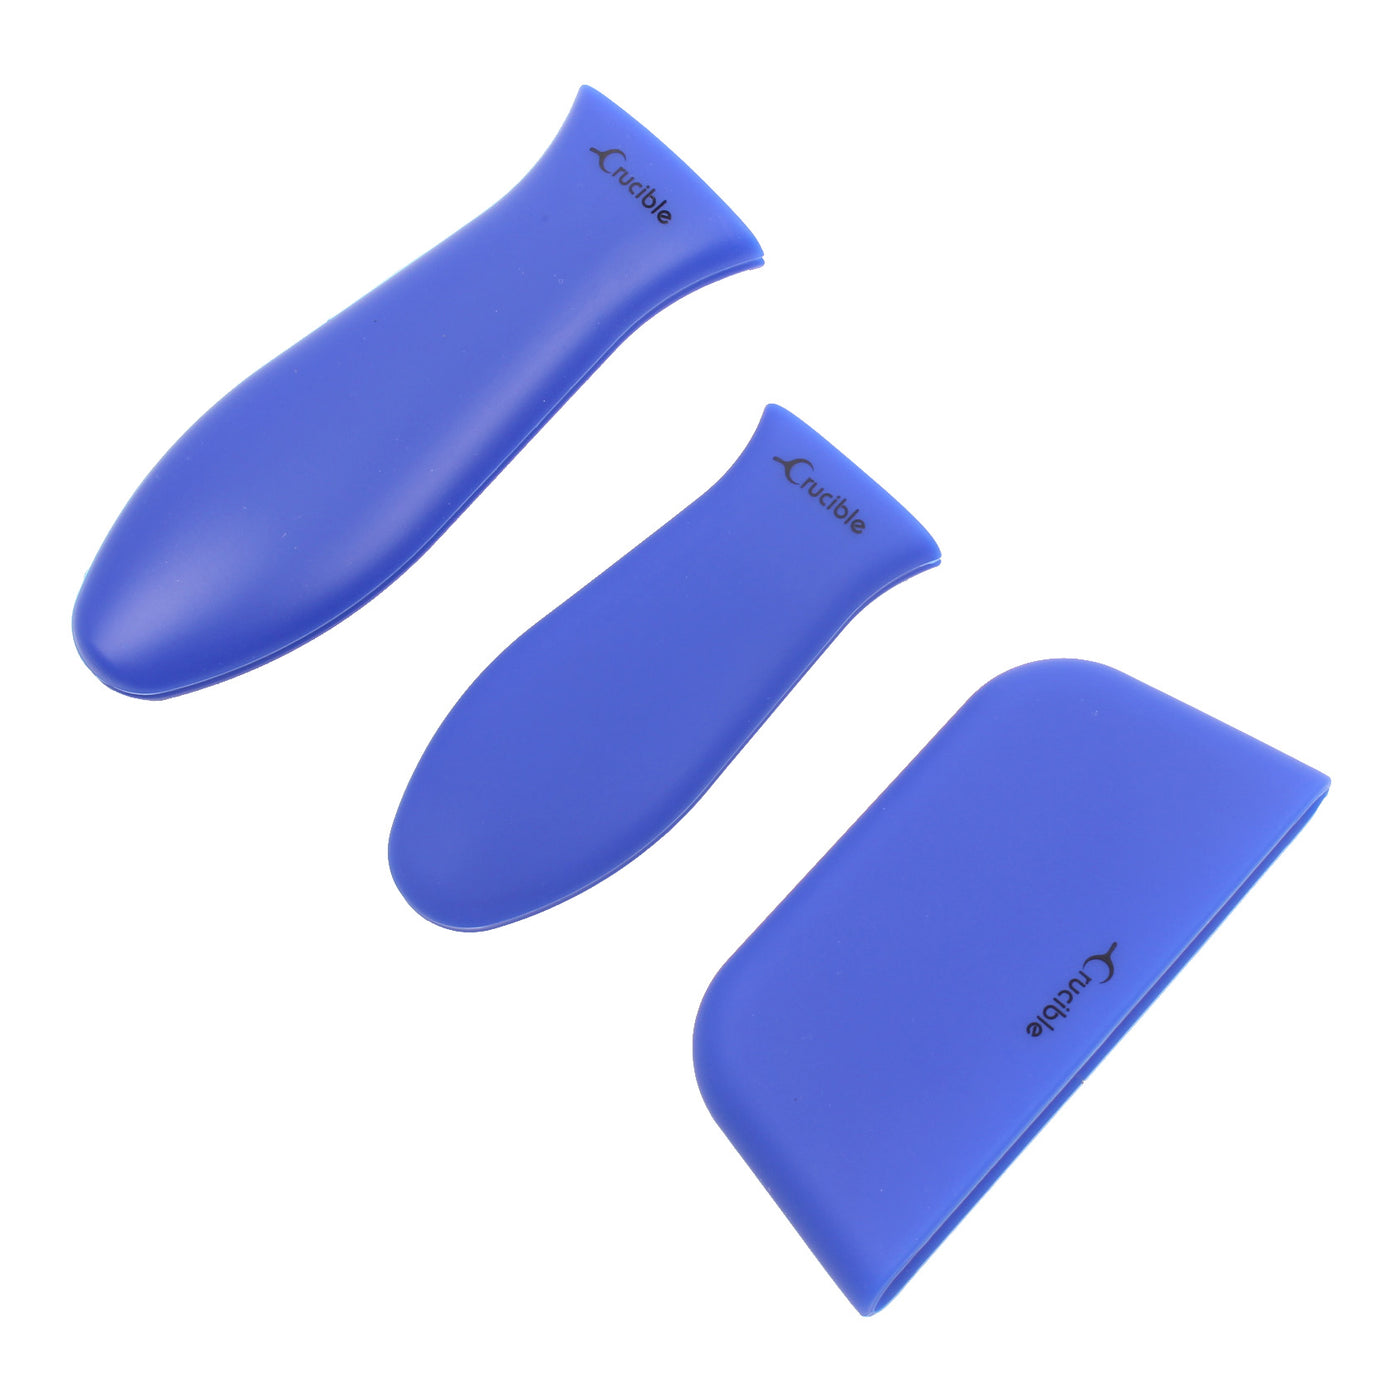 Silikone varmhåndtagsholder, grydelapper (3-pak blanding blå), ærmegreb, håndtagsdæksel